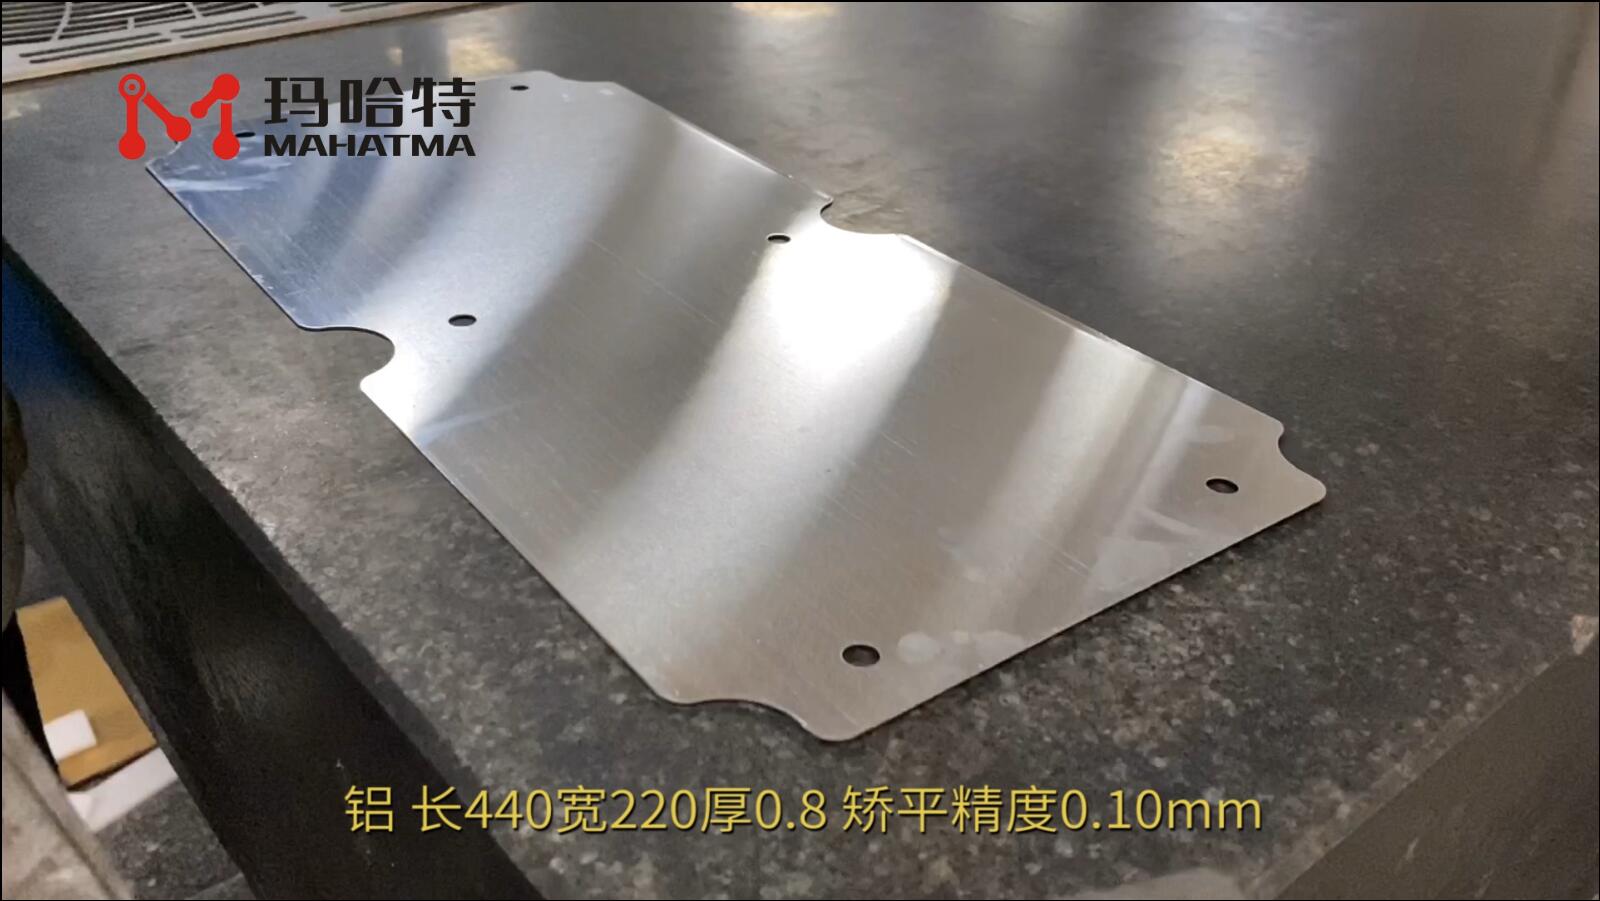  铝 MHT30-1300 长方形 长450宽250厚0.8mm